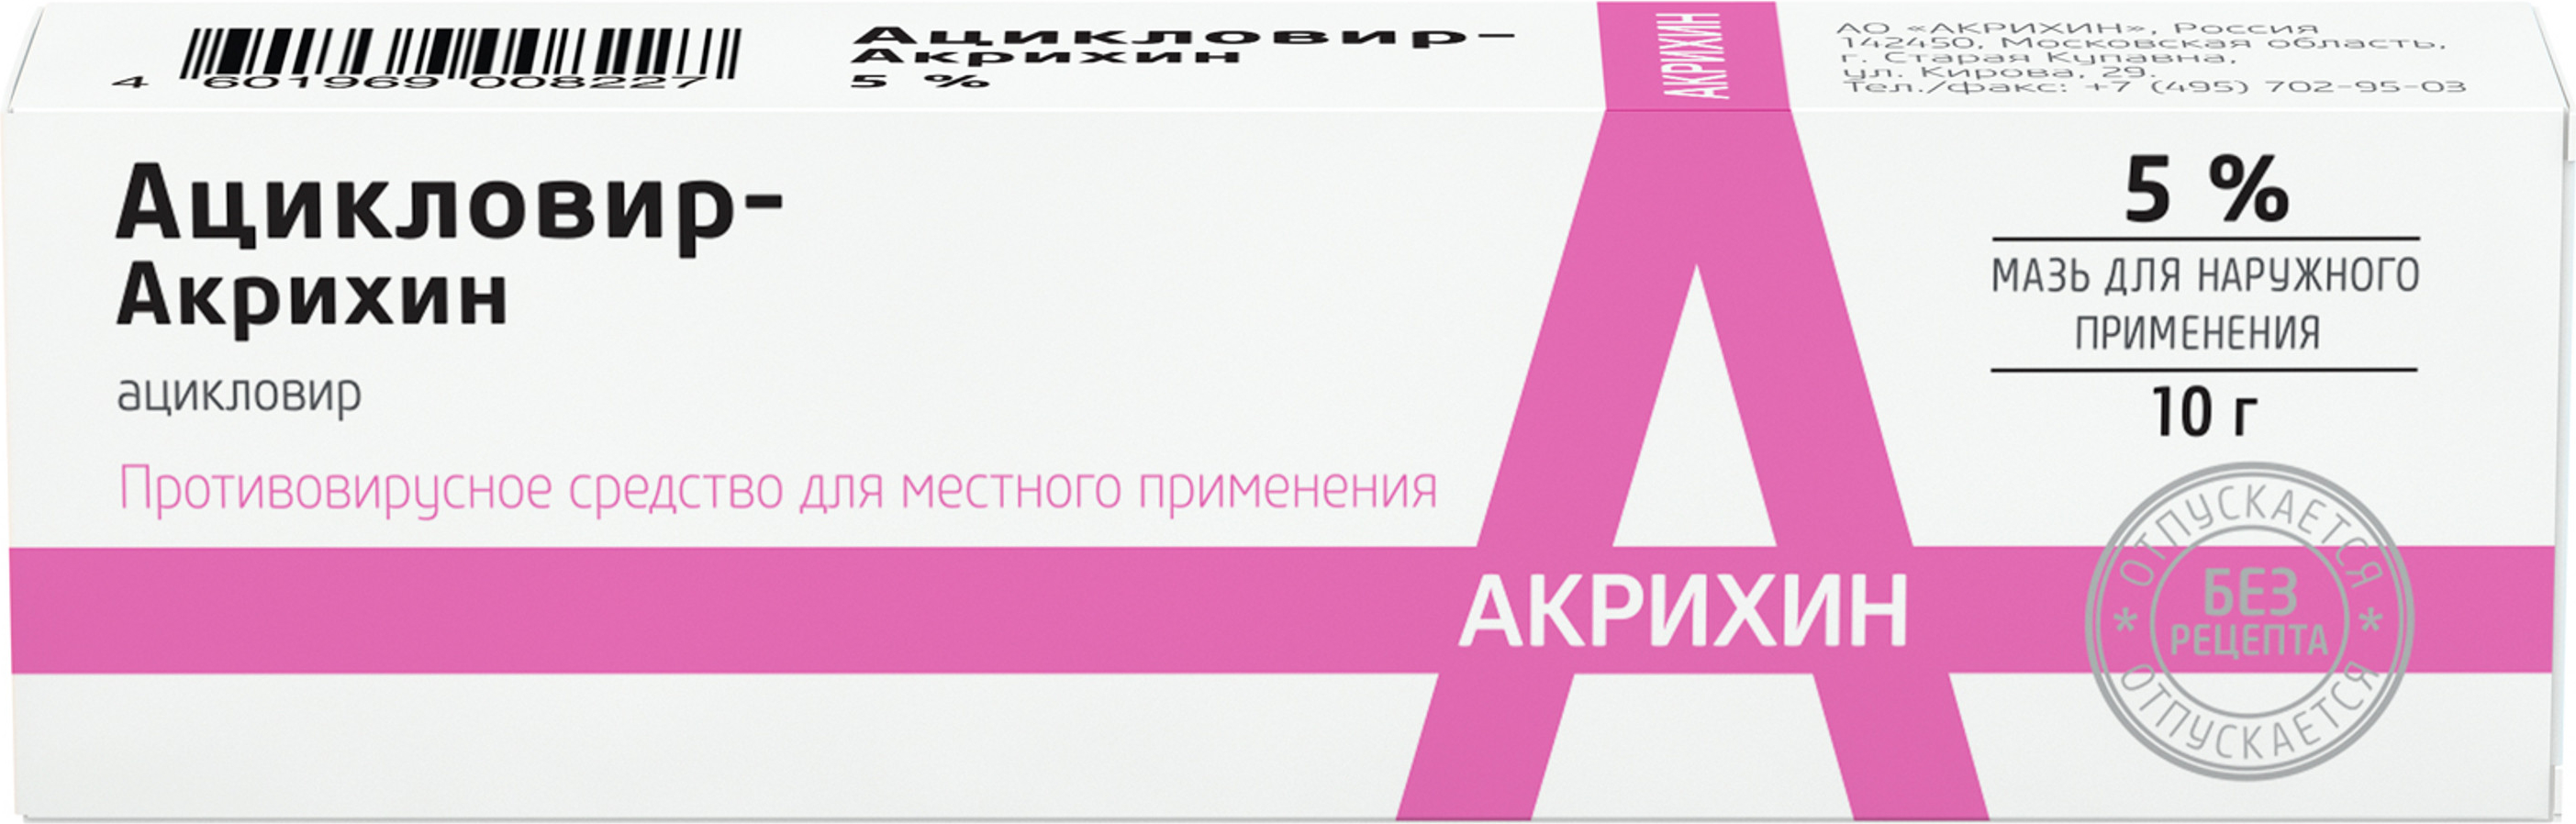 Ацикловир-Акрихин, мазь 5%, 10 г